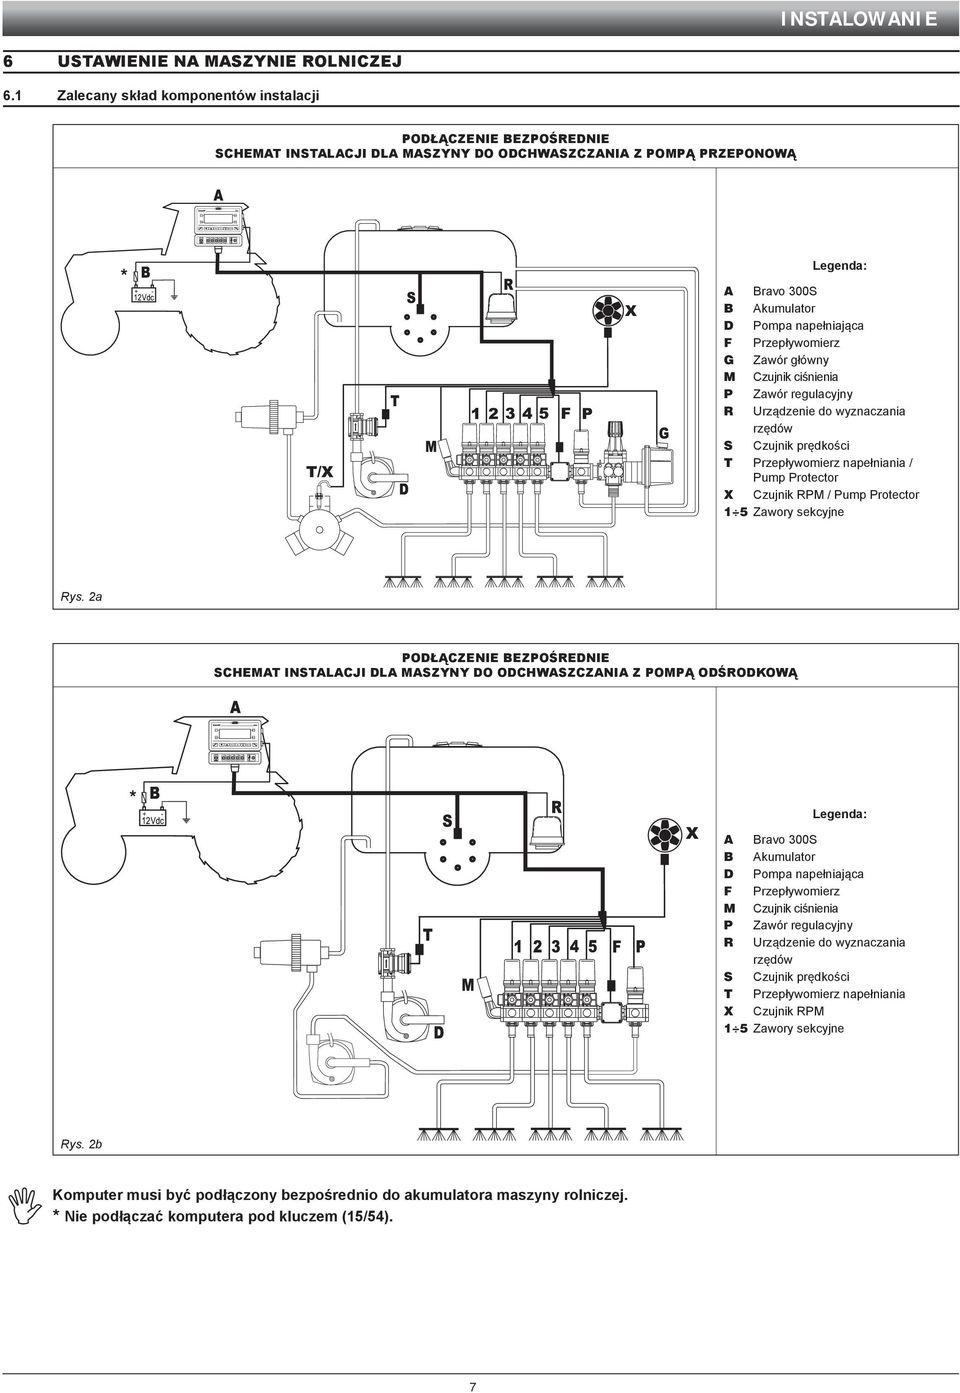 napełniająca Przepływomierz Zawór główny Czujnik ciśnienia Zawór regulacyjny Urządzenie do wyznaczania rzędów Czujnik prędkości T Przepływomierz napełniania / Pump Protector X Czujnik RPM / Pump